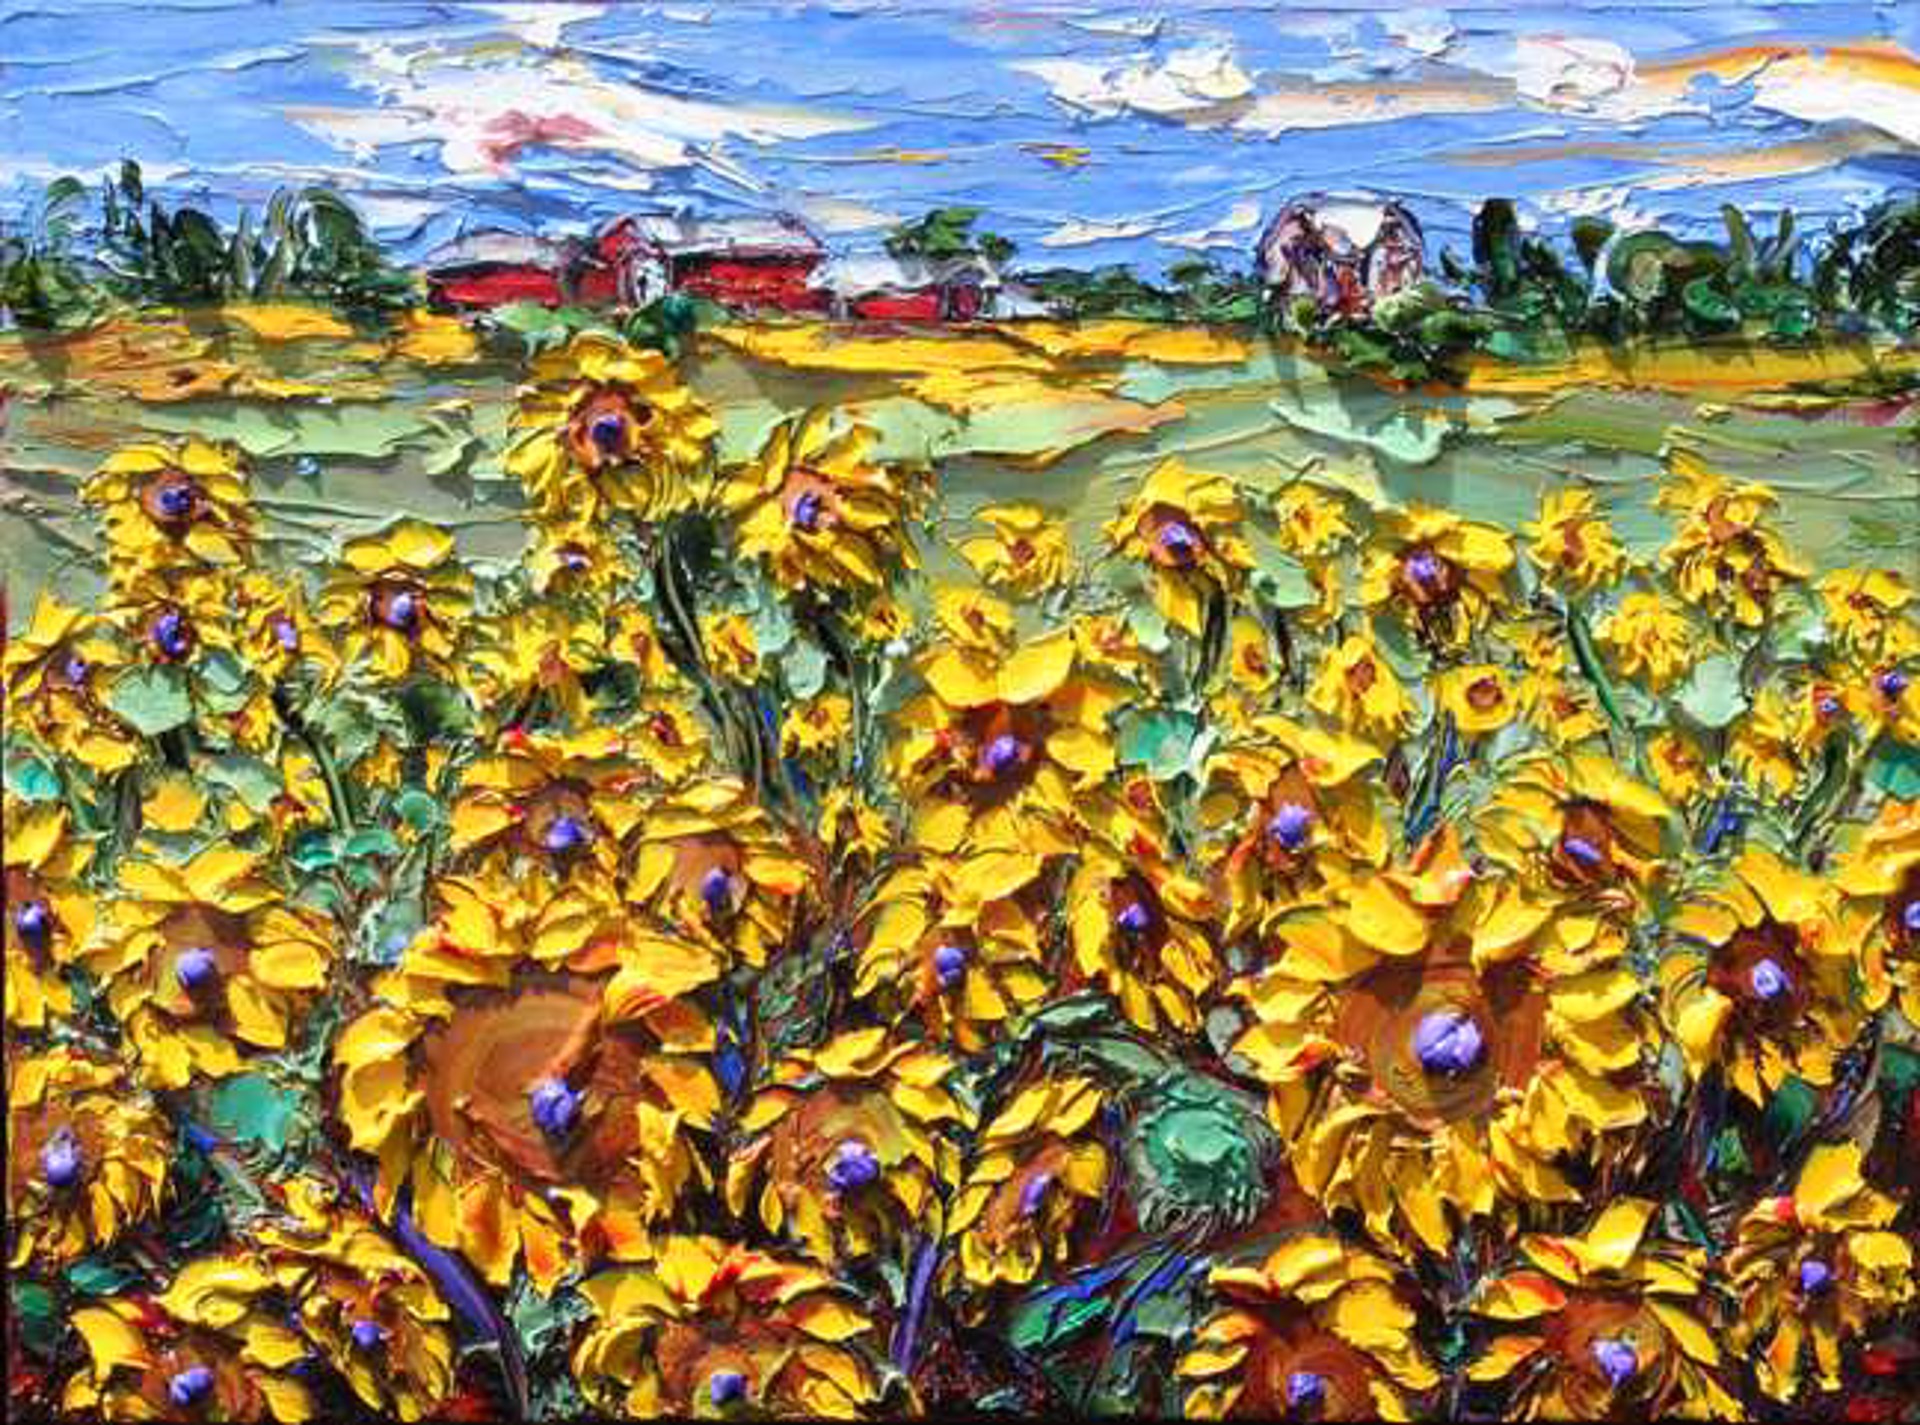 Sunflower Fields Forever by JD Miller